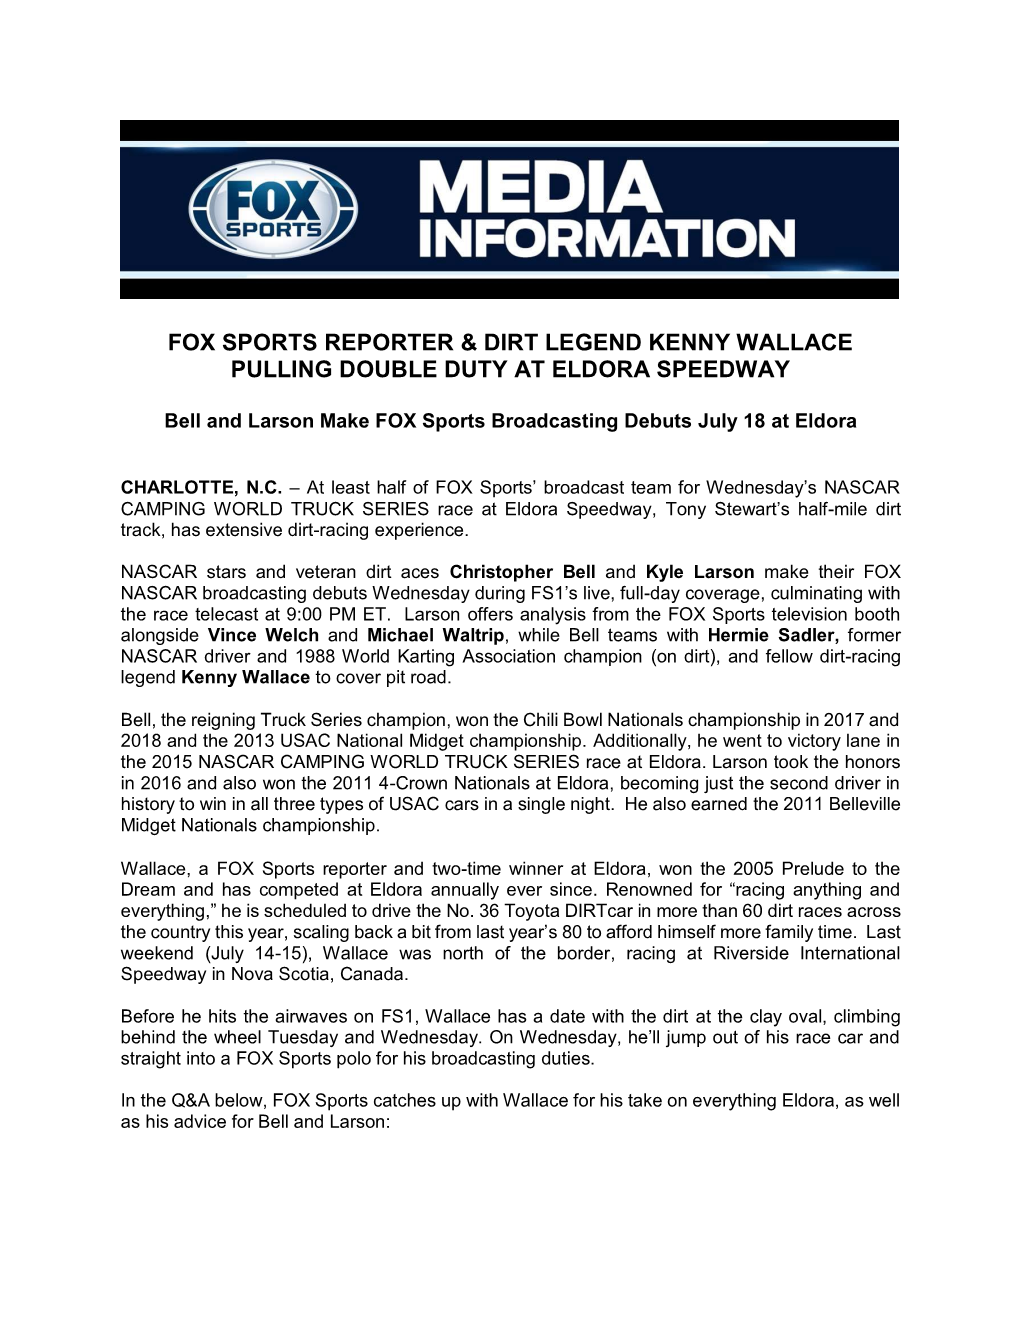 Fox Sports Reporter & Dirt Legend Kenny Wallace Pulling Double Duty